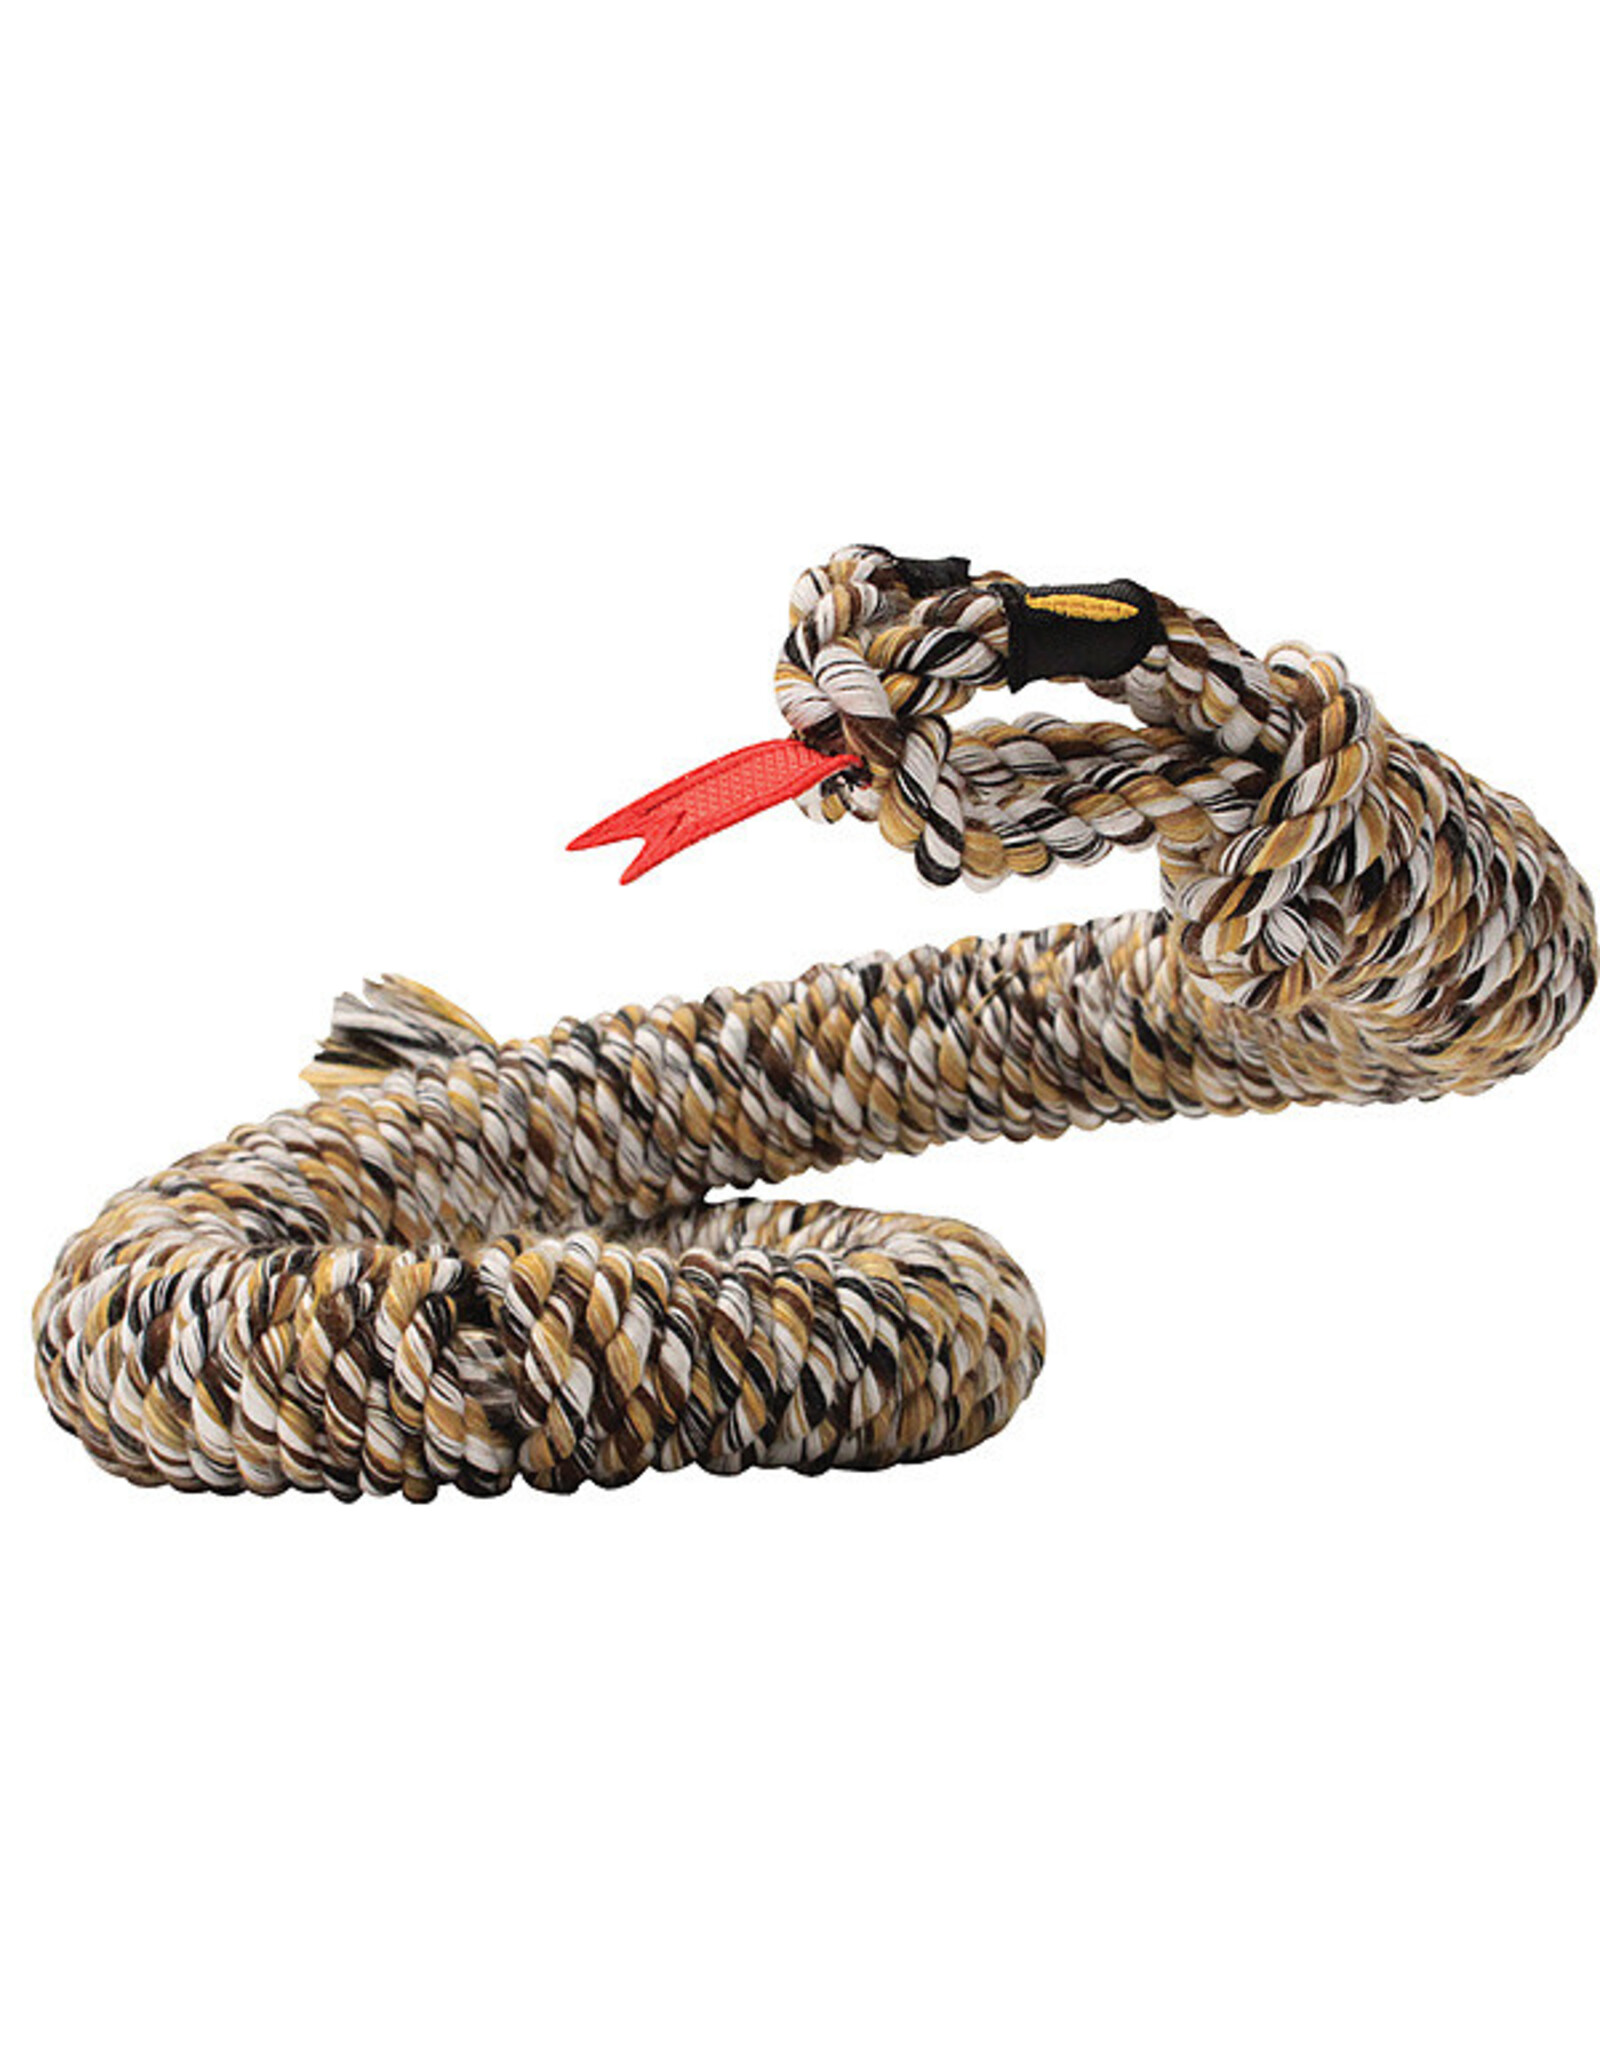 Mammoth Snake Biter Rope Medium 34"